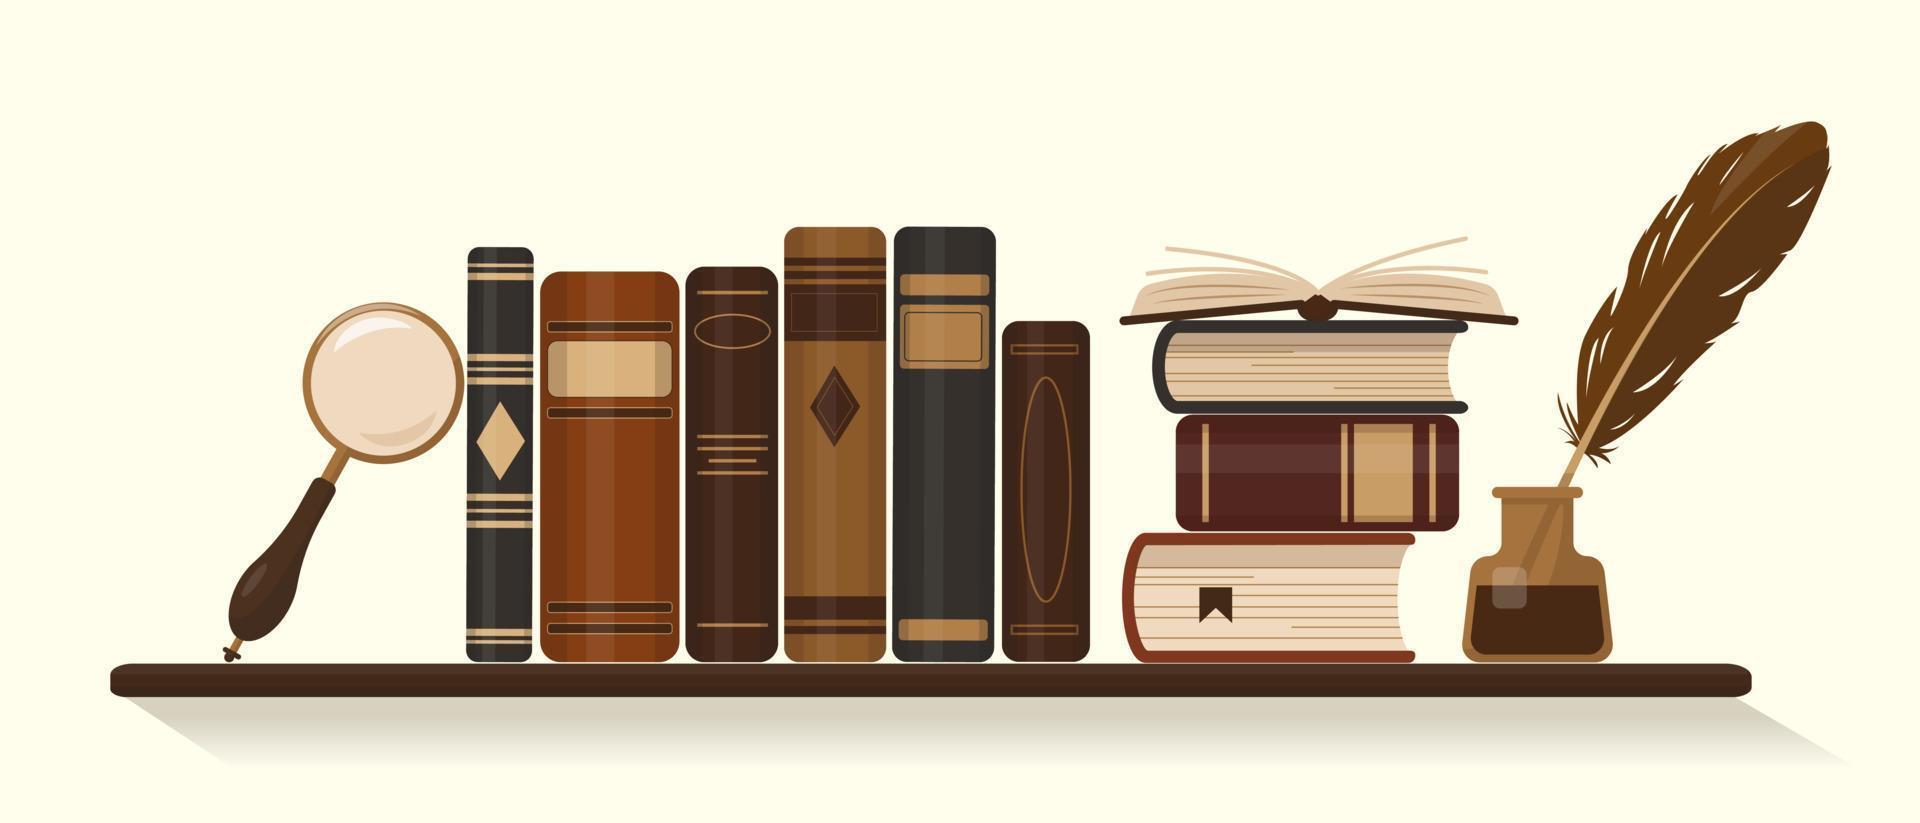 bibliothèque avec livres bruns anciens ou historiques, encrier avec plume d'oie et loupe. illustration vectorielle. vecteur